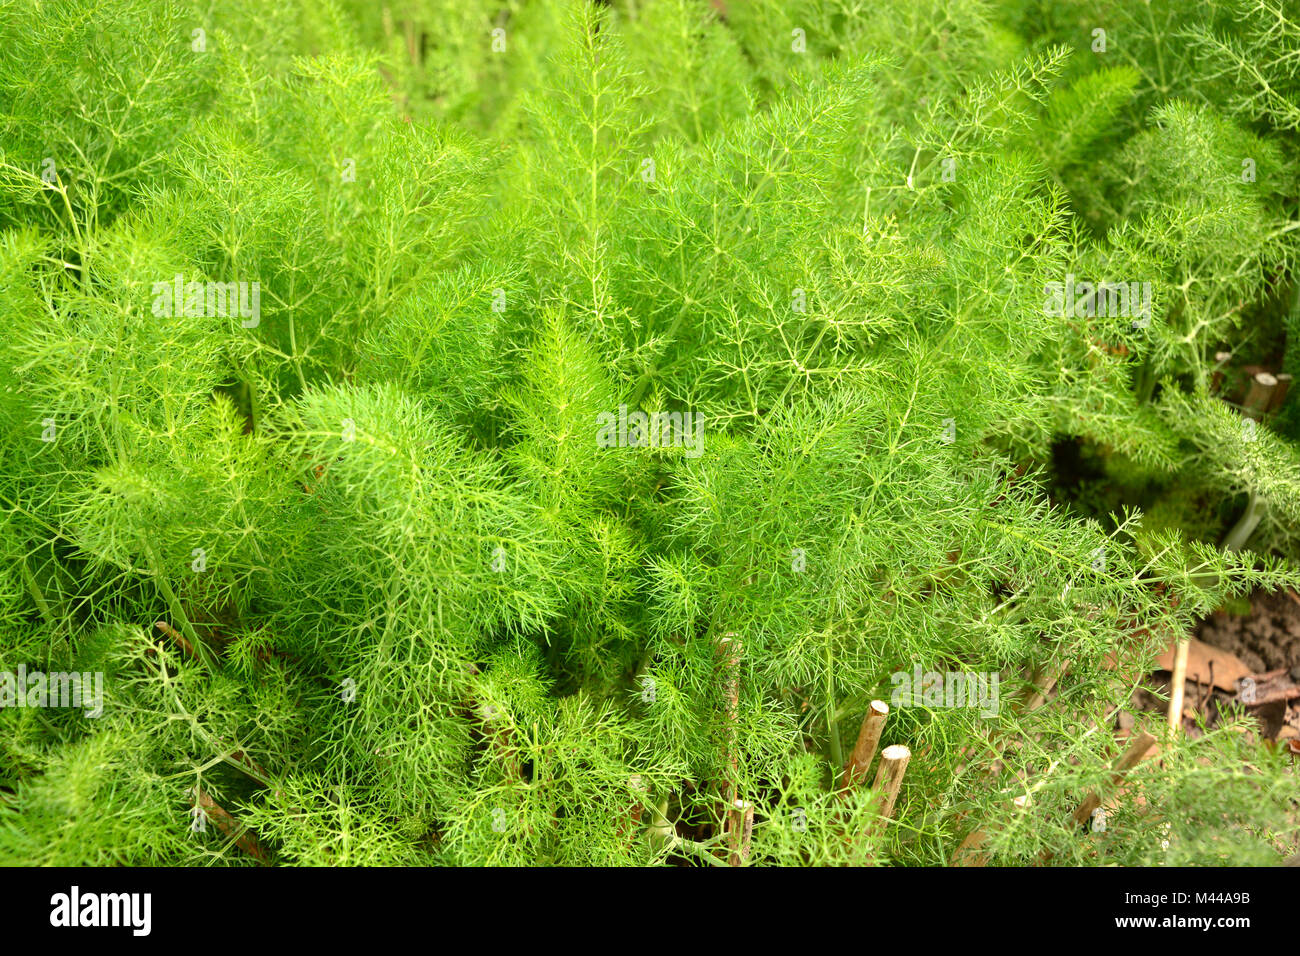 foeniculum vulgare Stock Photo